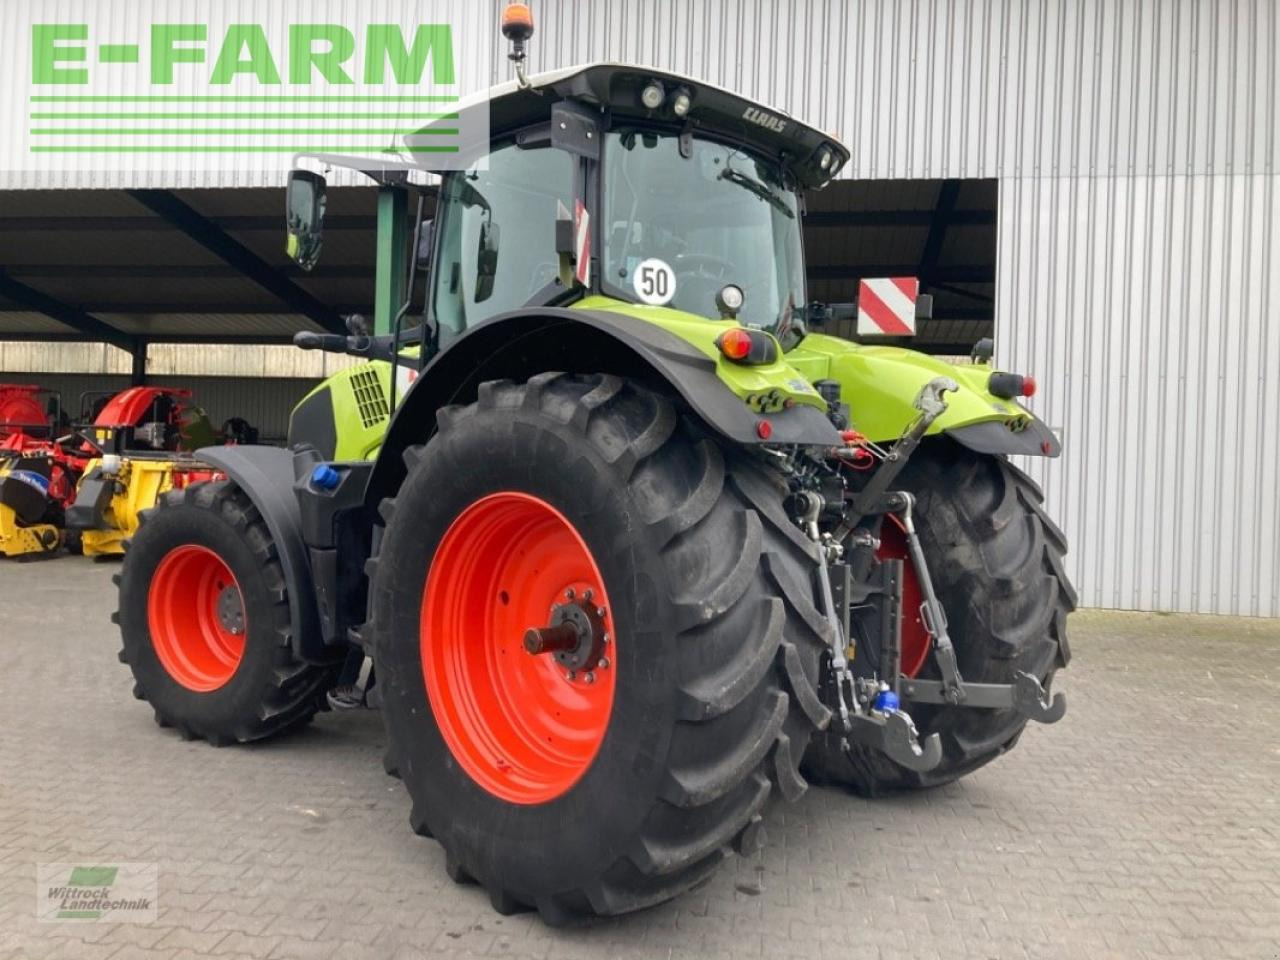 Farm tractor CLAAS axion 810 cm cis+